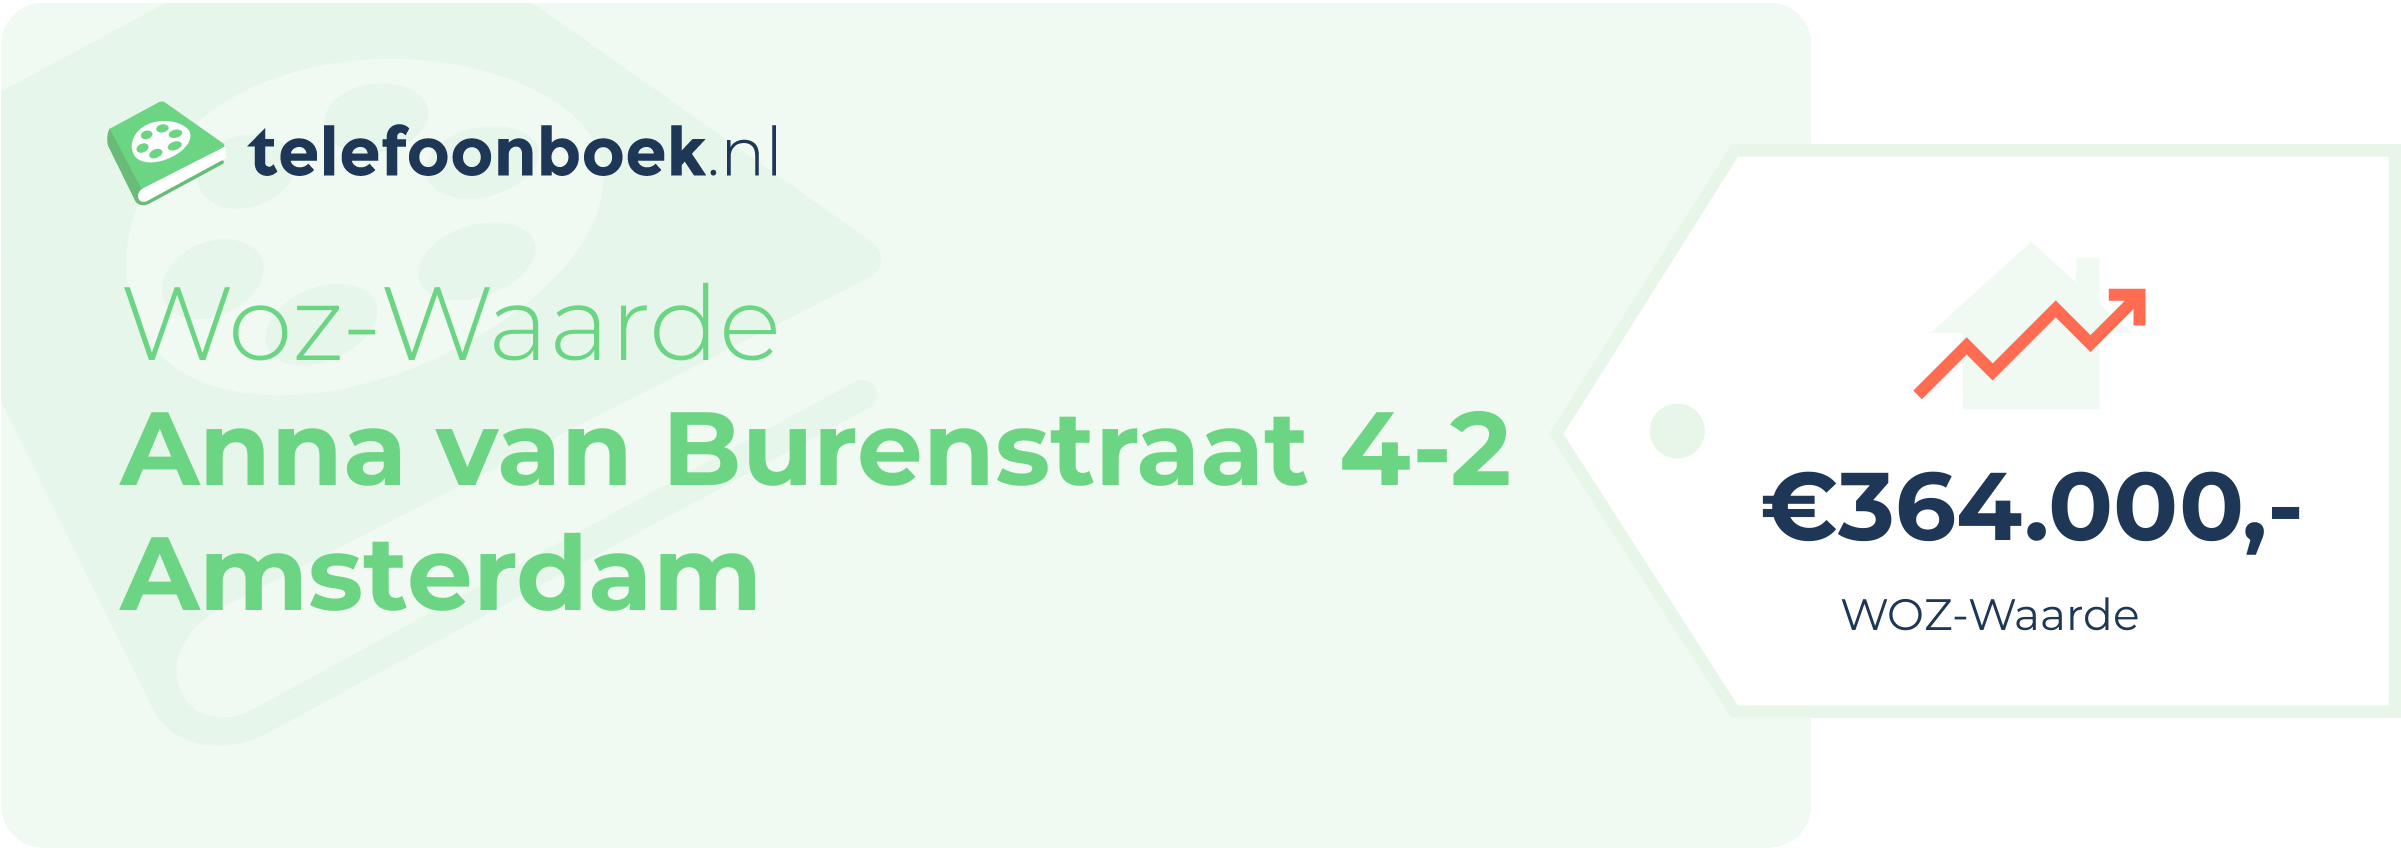 WOZ-waarde Anna Van Burenstraat 4-2 Amsterdam